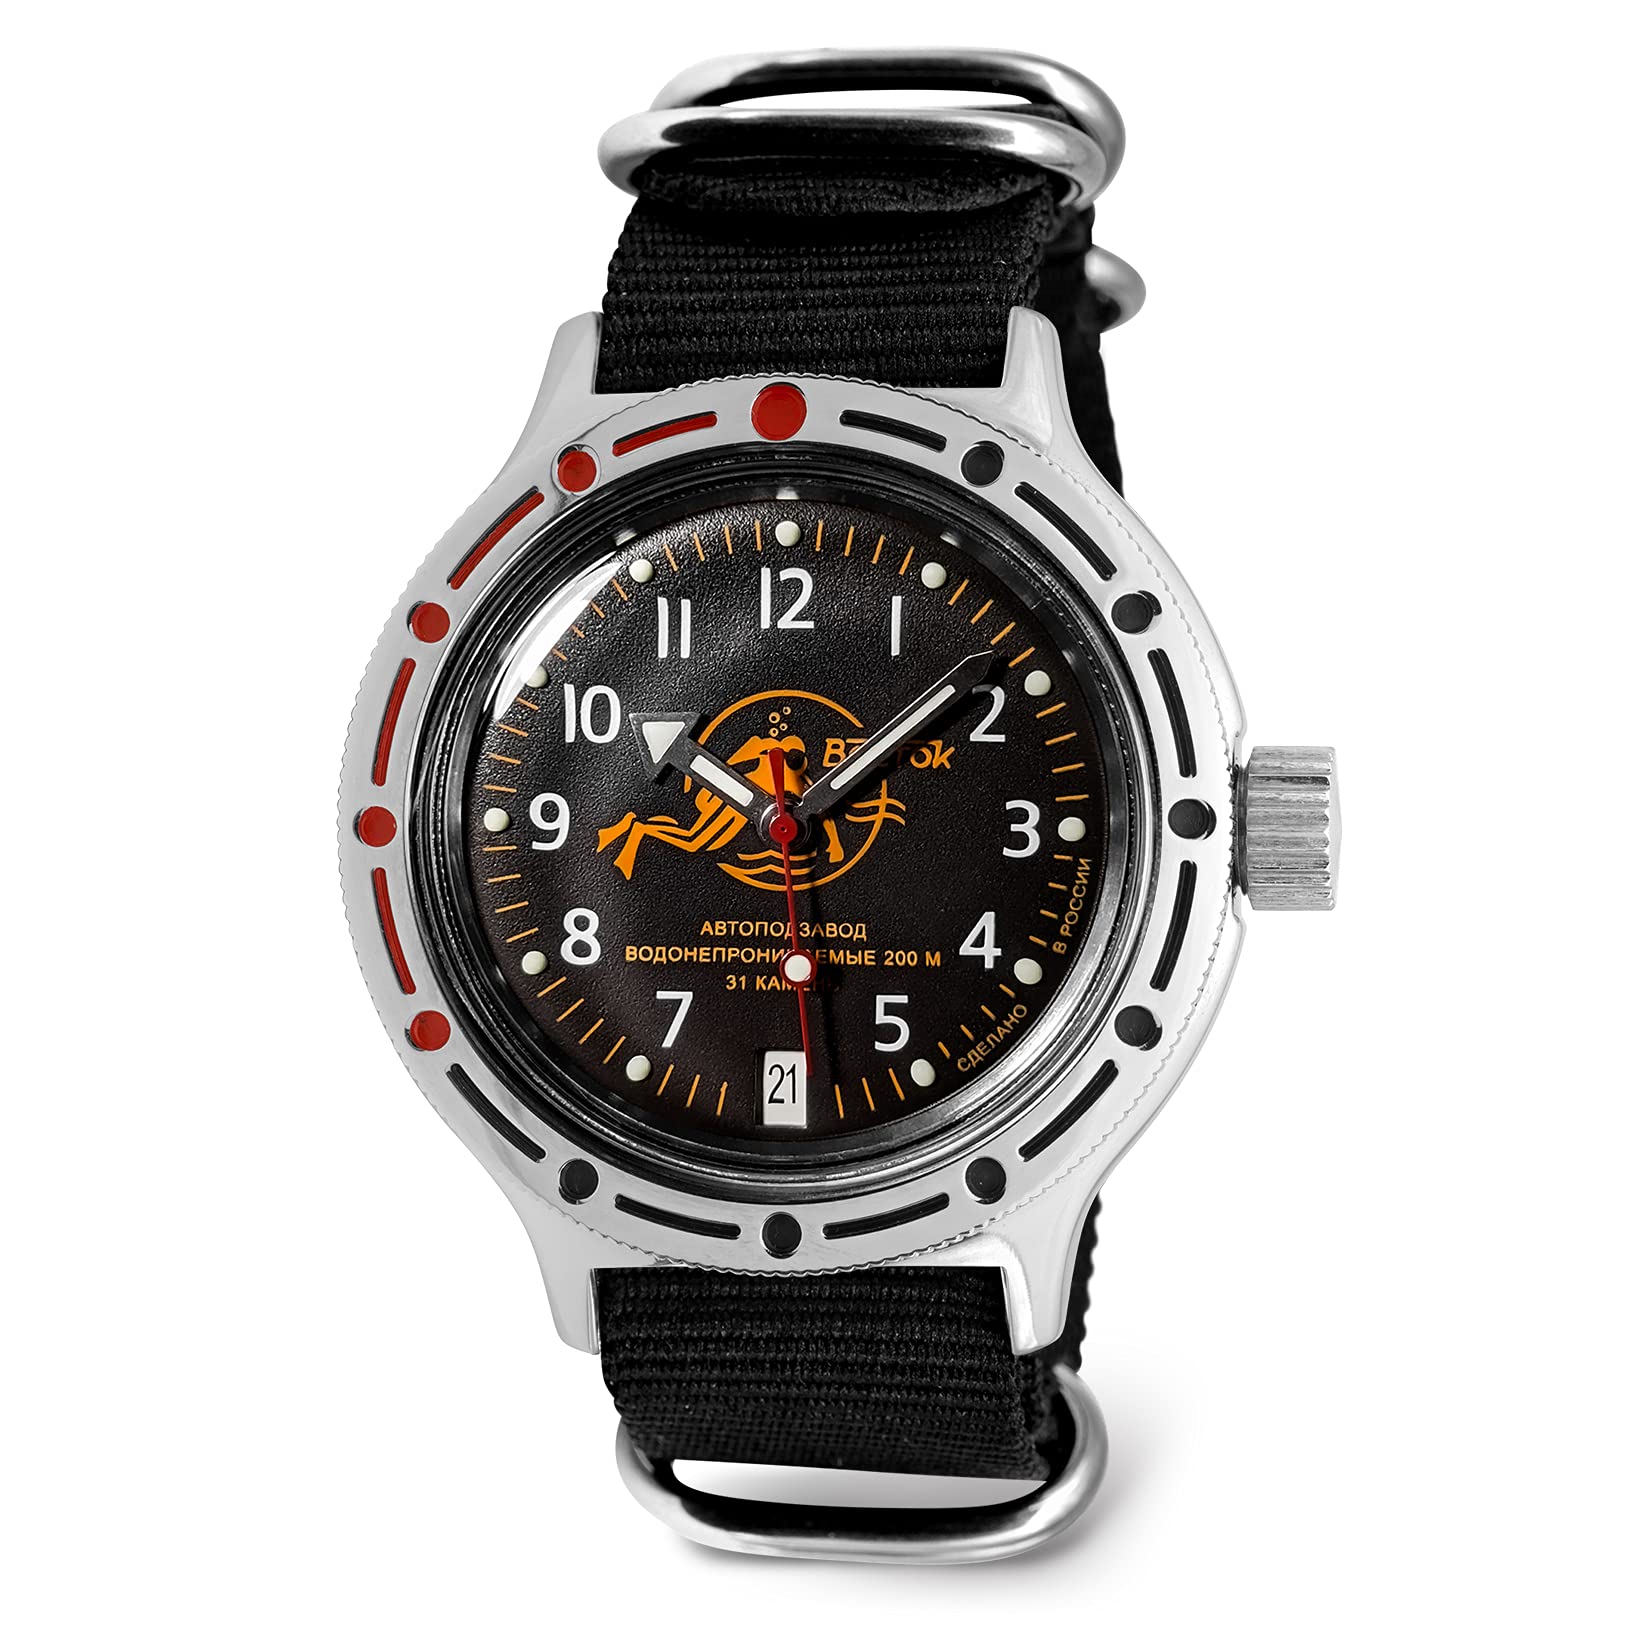 ボストーク VOSTOK Scuba Dude Amphibian Automatic Self-Winding Russian Diver Wrist Watch WR 200 m Fashion Business